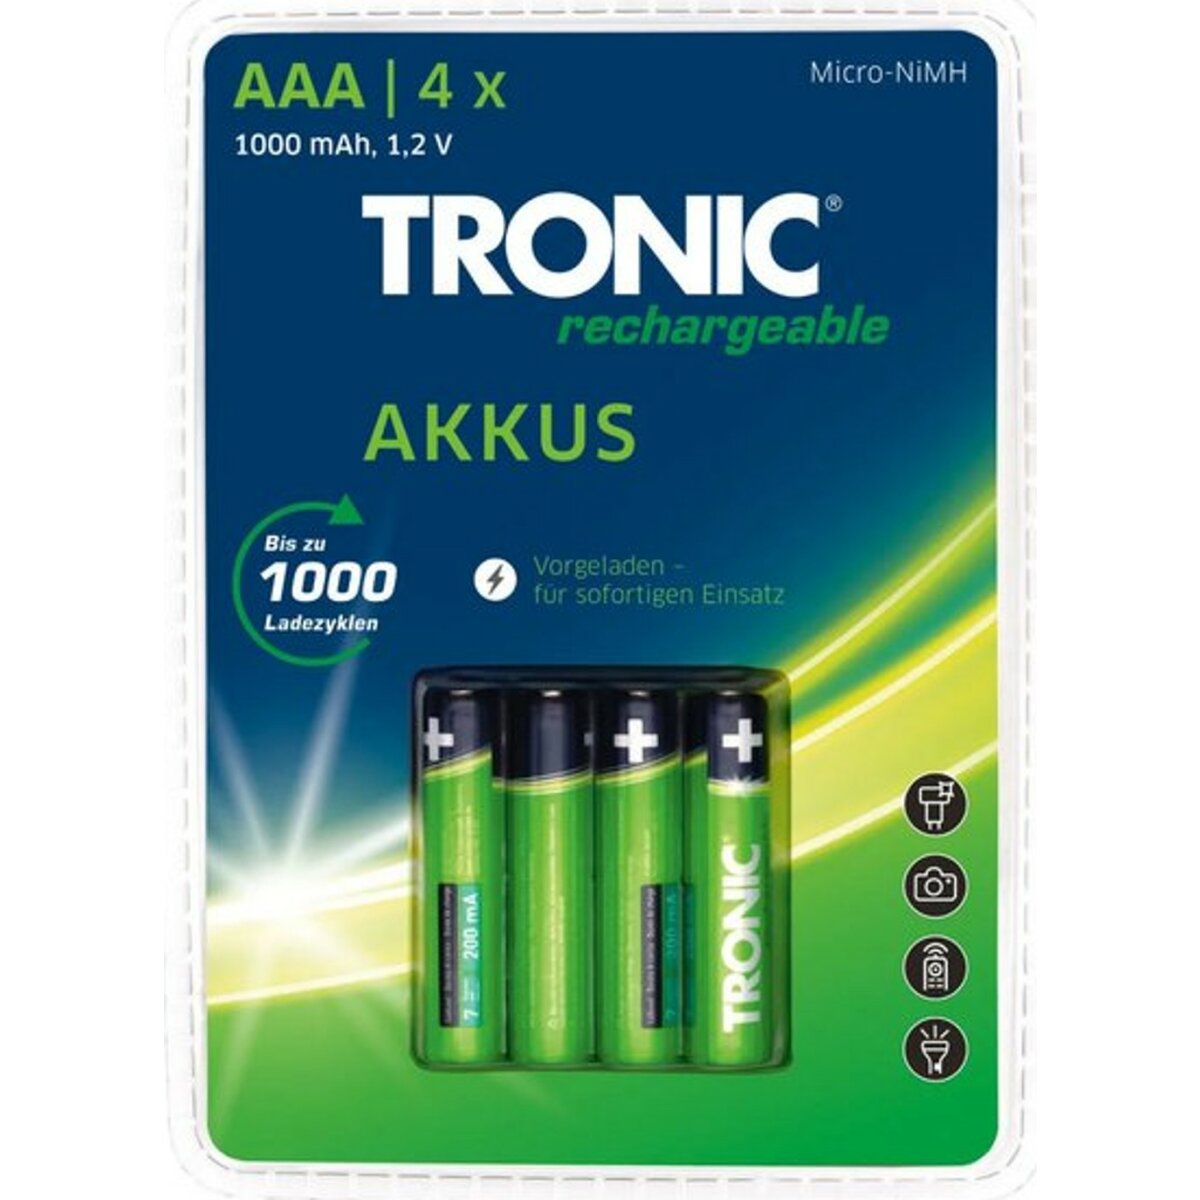 TRONIC Akku Ready 2 Use 4 Stück, -Ni-MH, AAA/Micro/HR03/HRMRI03 11/45